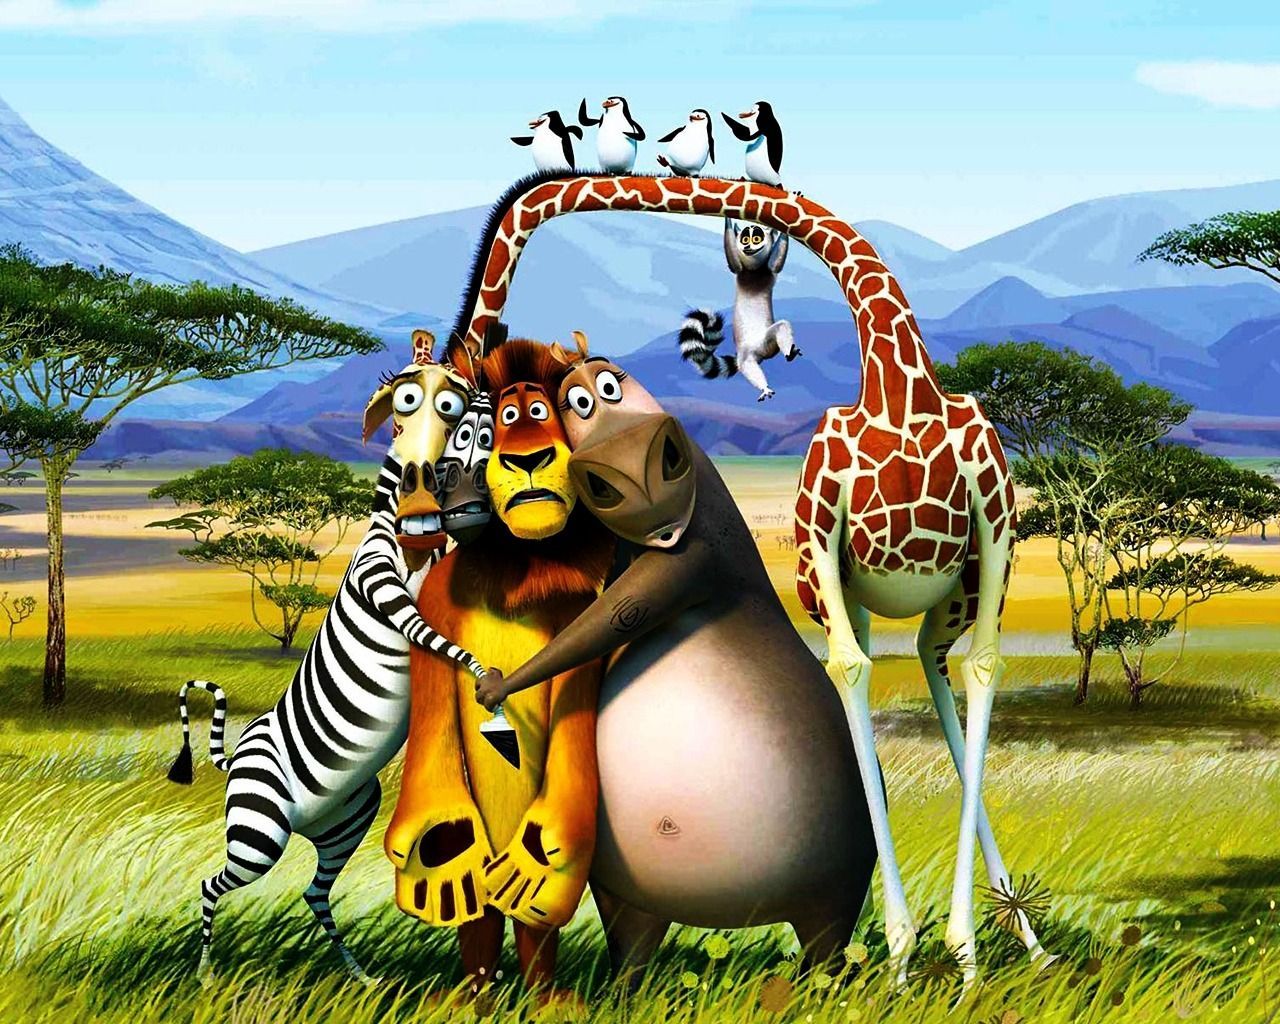 Madagascar 3 wallpaper. Funny Madagascar movie wallpaper. Madagascar movie, Cartoon pics, Movie wallpaper